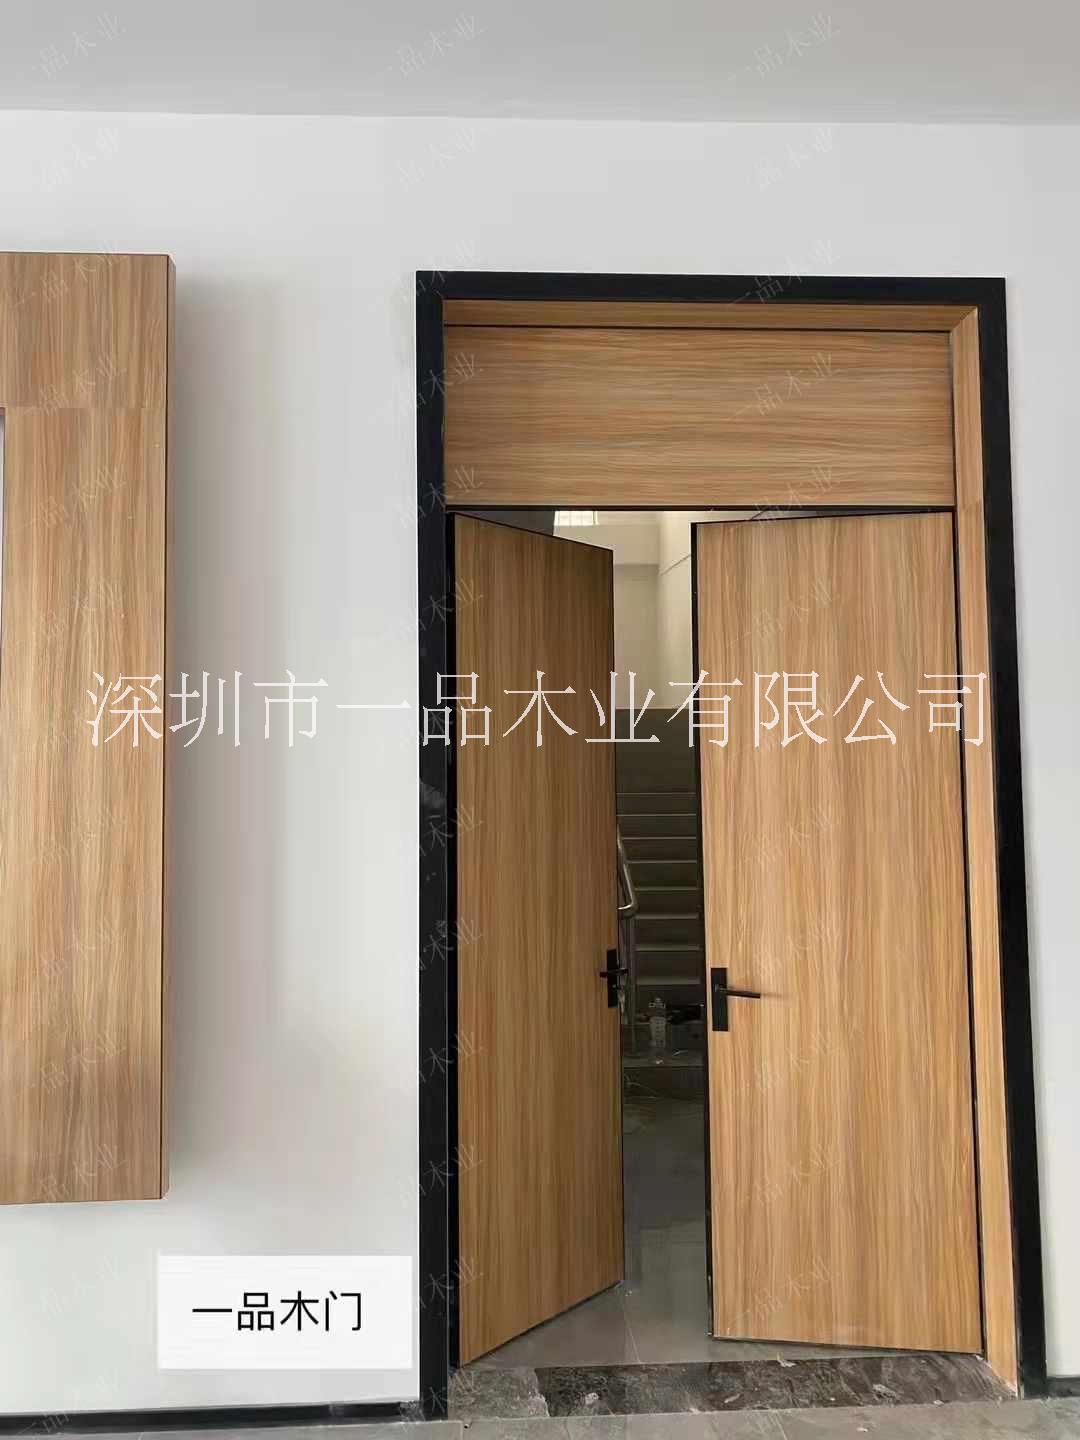 深圳铝木生态门——窄框铝木生态门批发